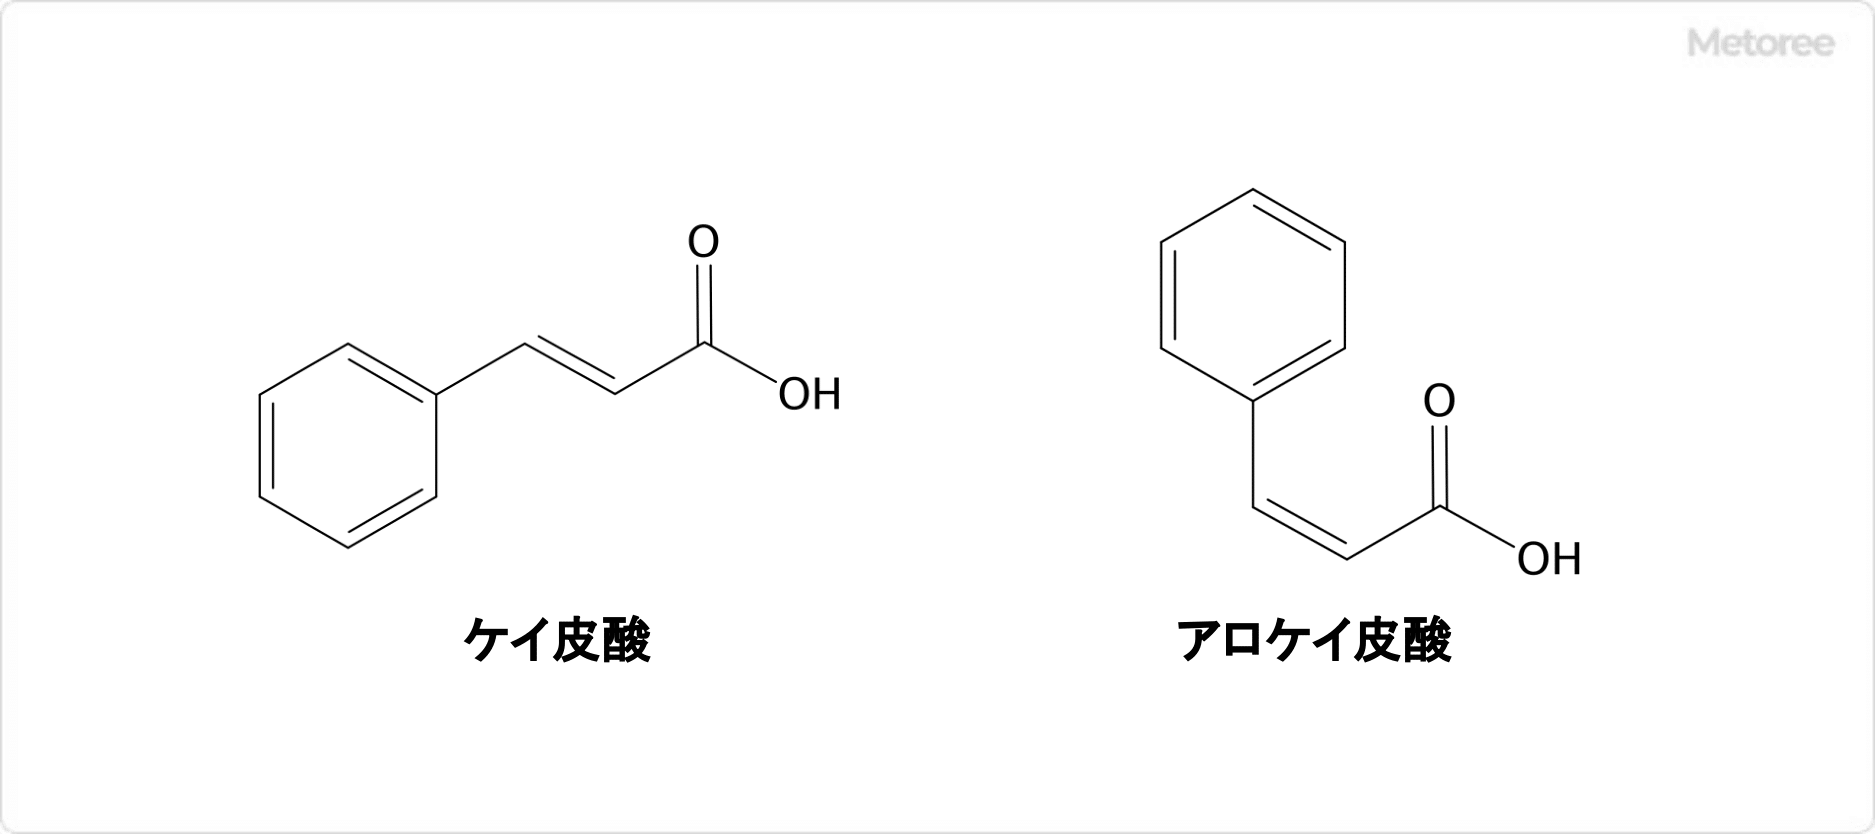 ケイ皮酸とアロケイ皮酸